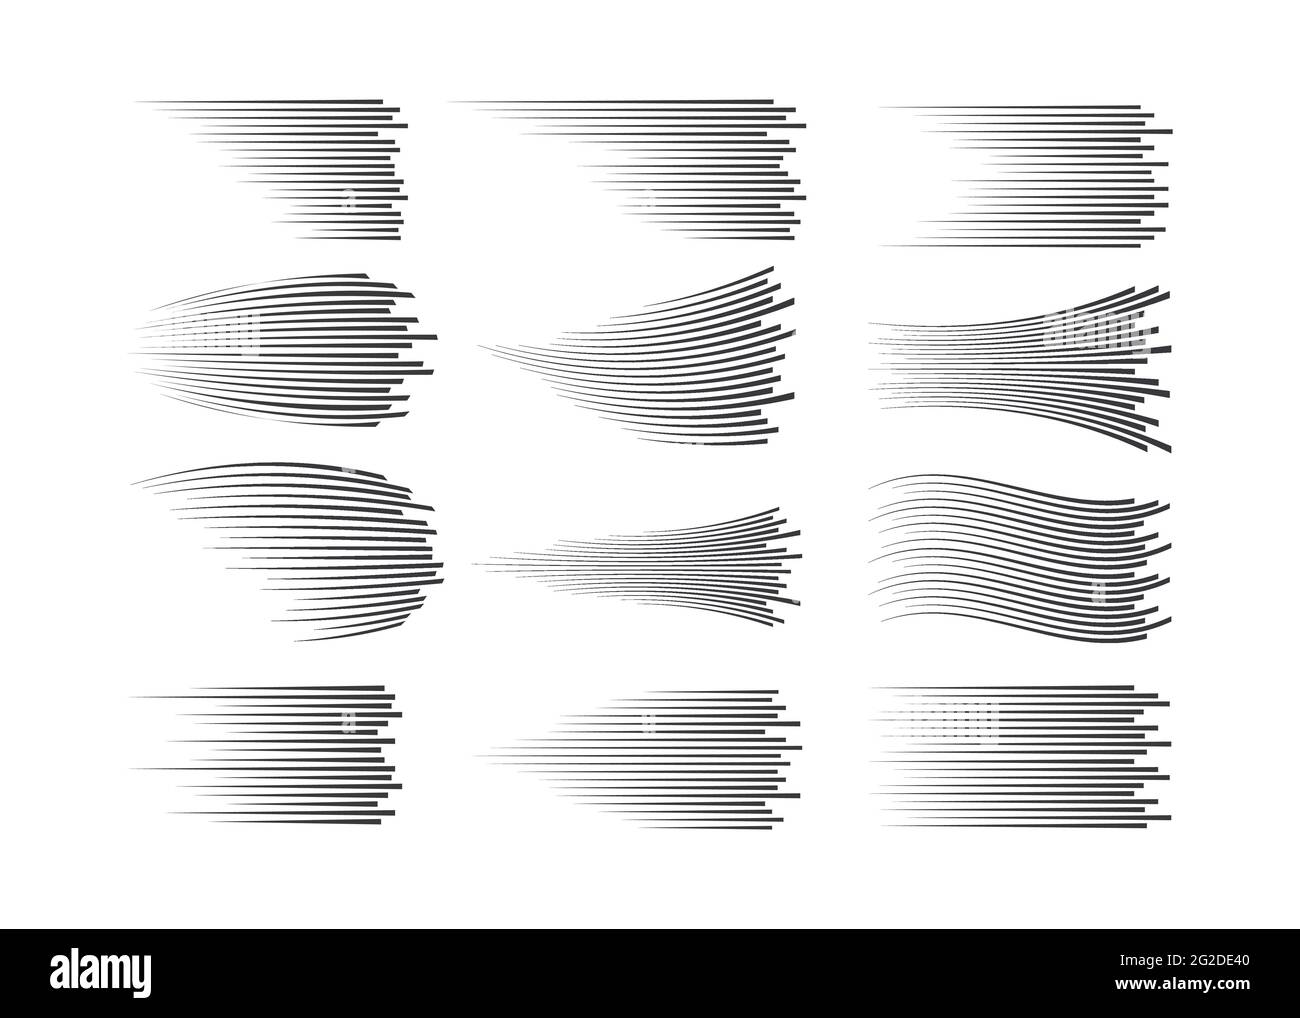 Isolierte Geschwindigkeitslinien. Bewegungseffekt für Ihr Design. Schwarze Linien auf weißem Hintergrund. Stock Vektor